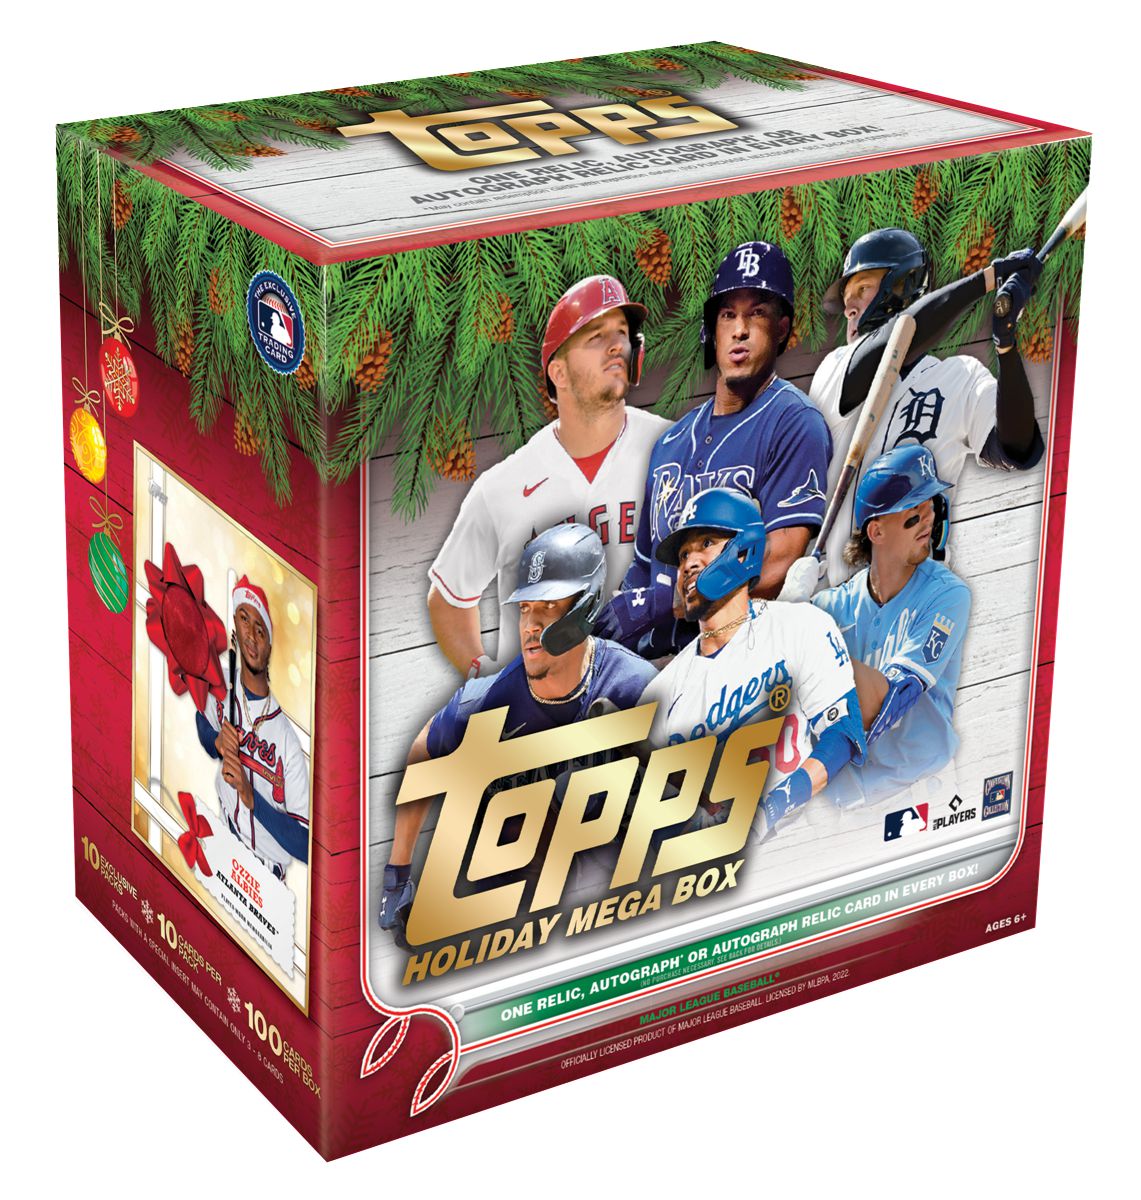 Topps Baseball Holiday Mega Baseball boxホリデー